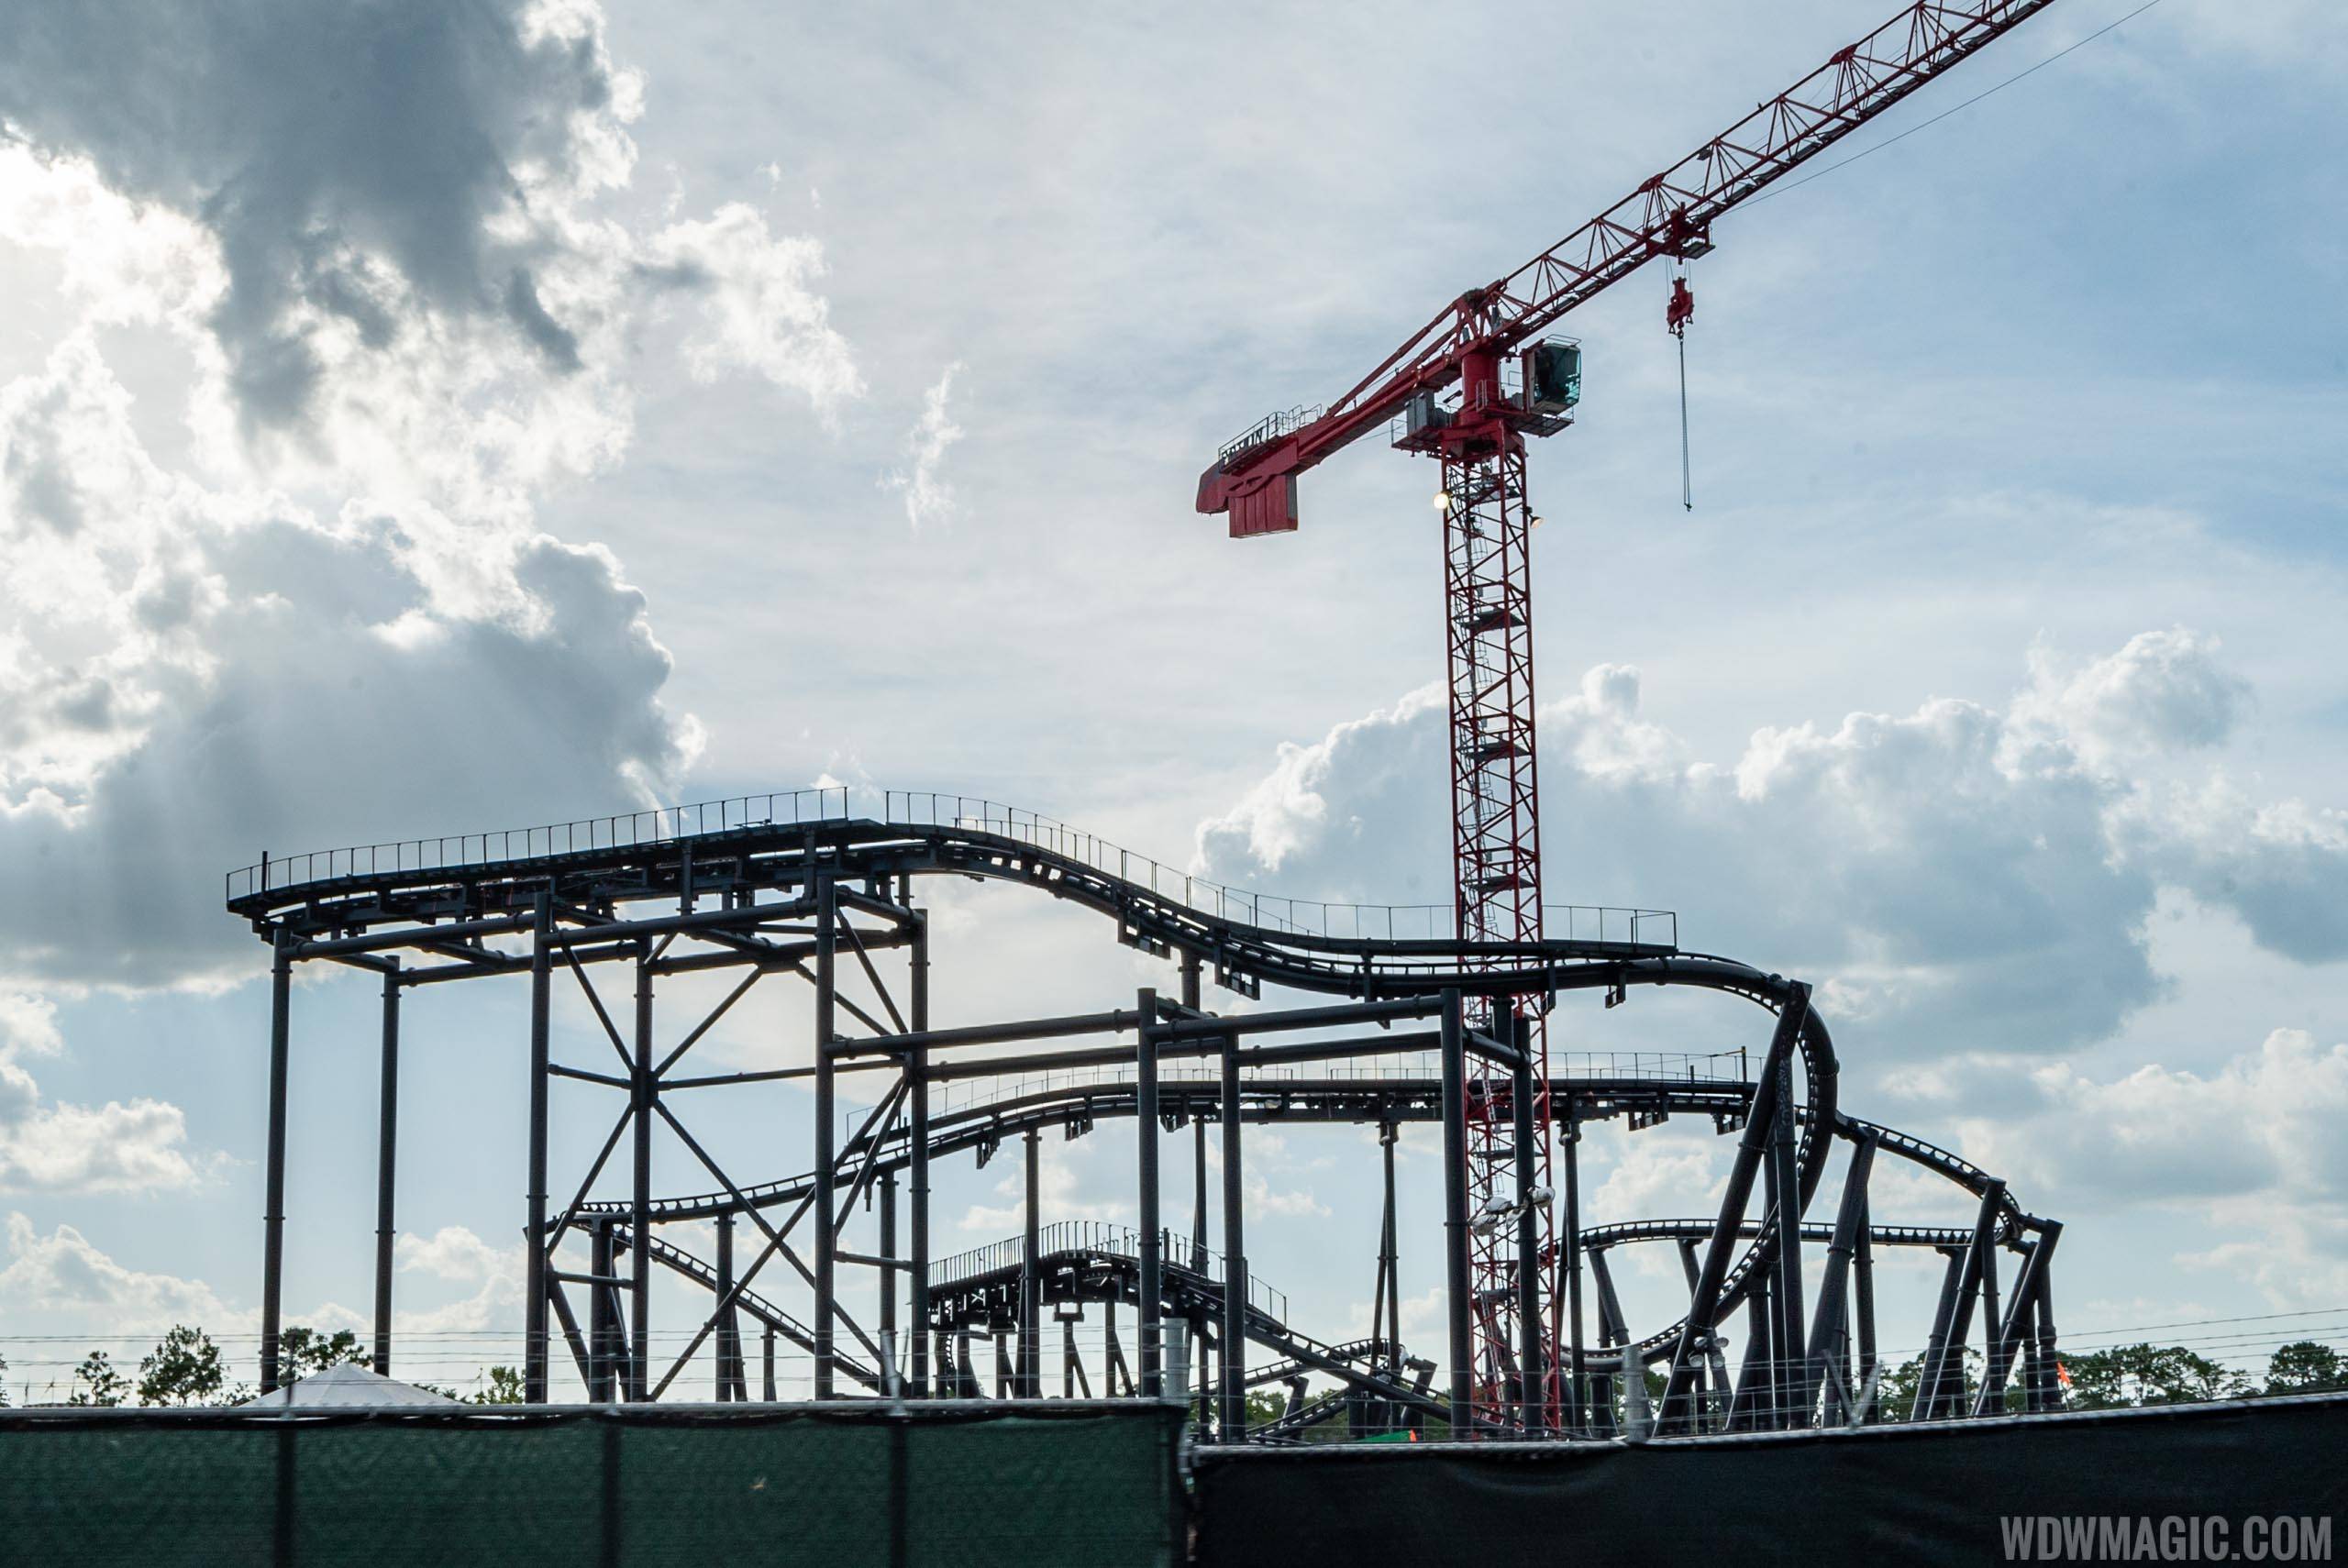 Tron construction site - June 2019